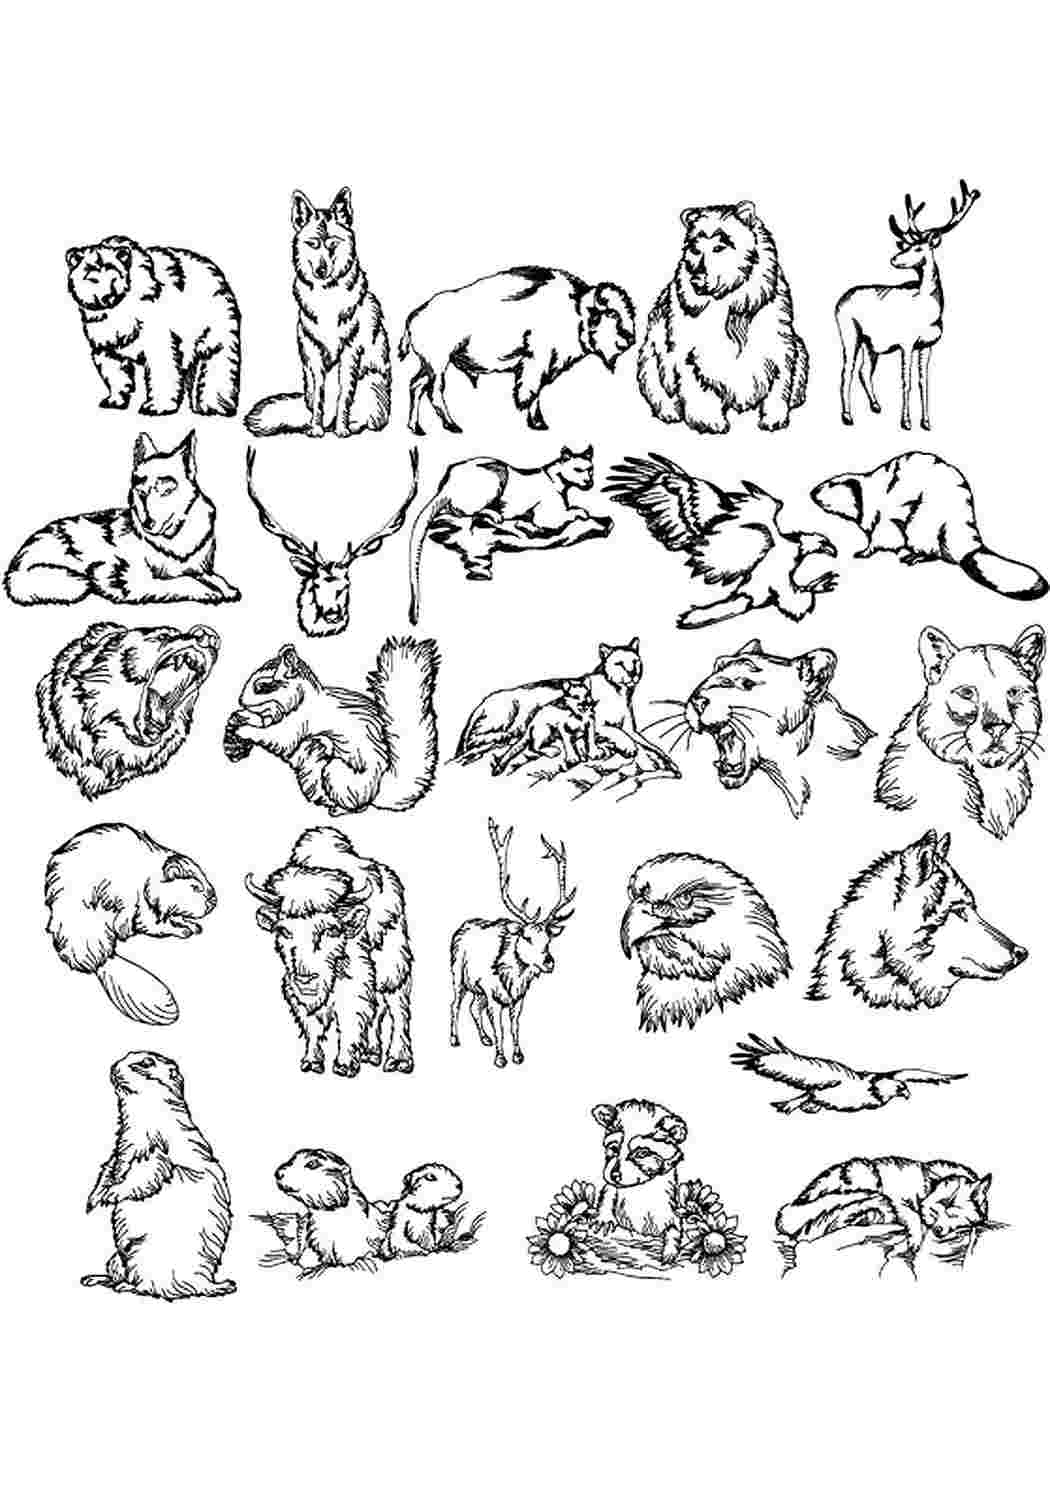 Много раскрасок на 1 листе. Раскраски. Животные. Маленькие рисунки животных. Раскраска "Дикие животные". Зарисовки диких животных.